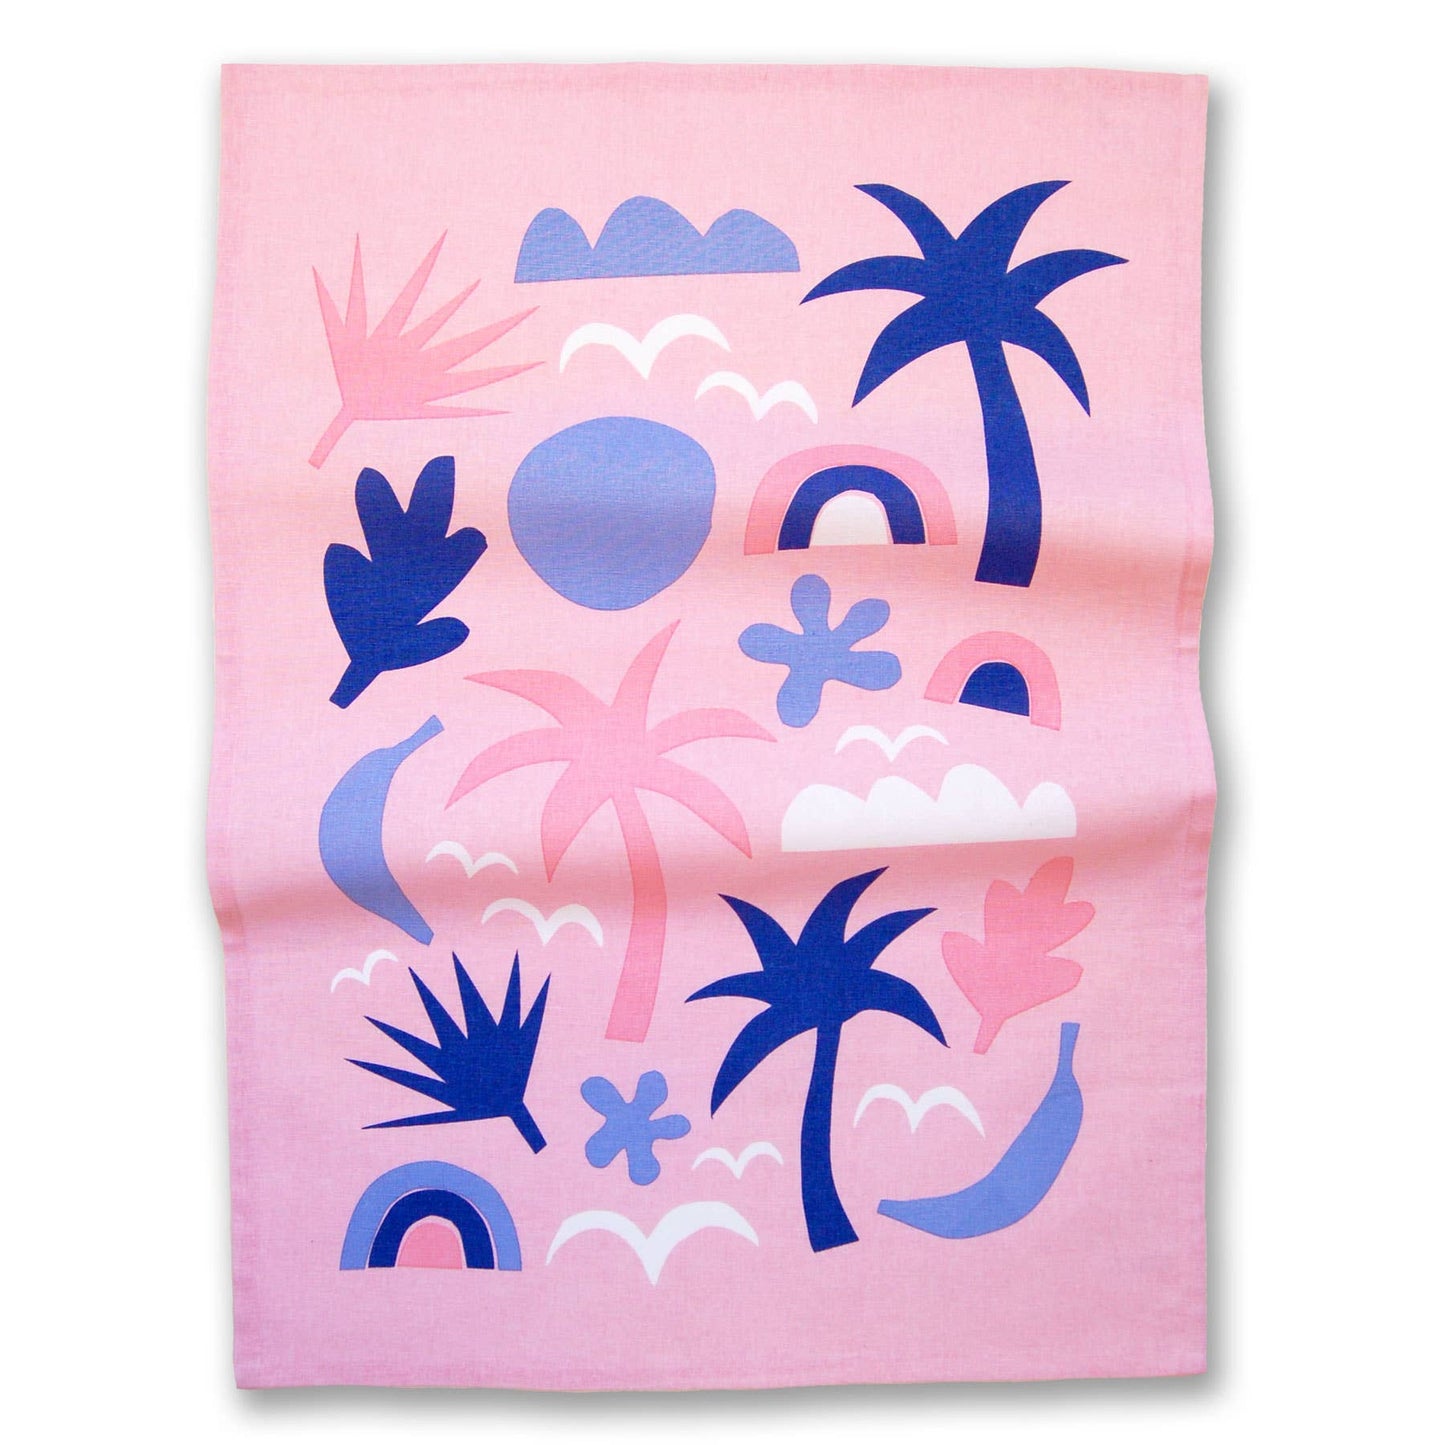 Badger & Burke - Tropics Tea Towel